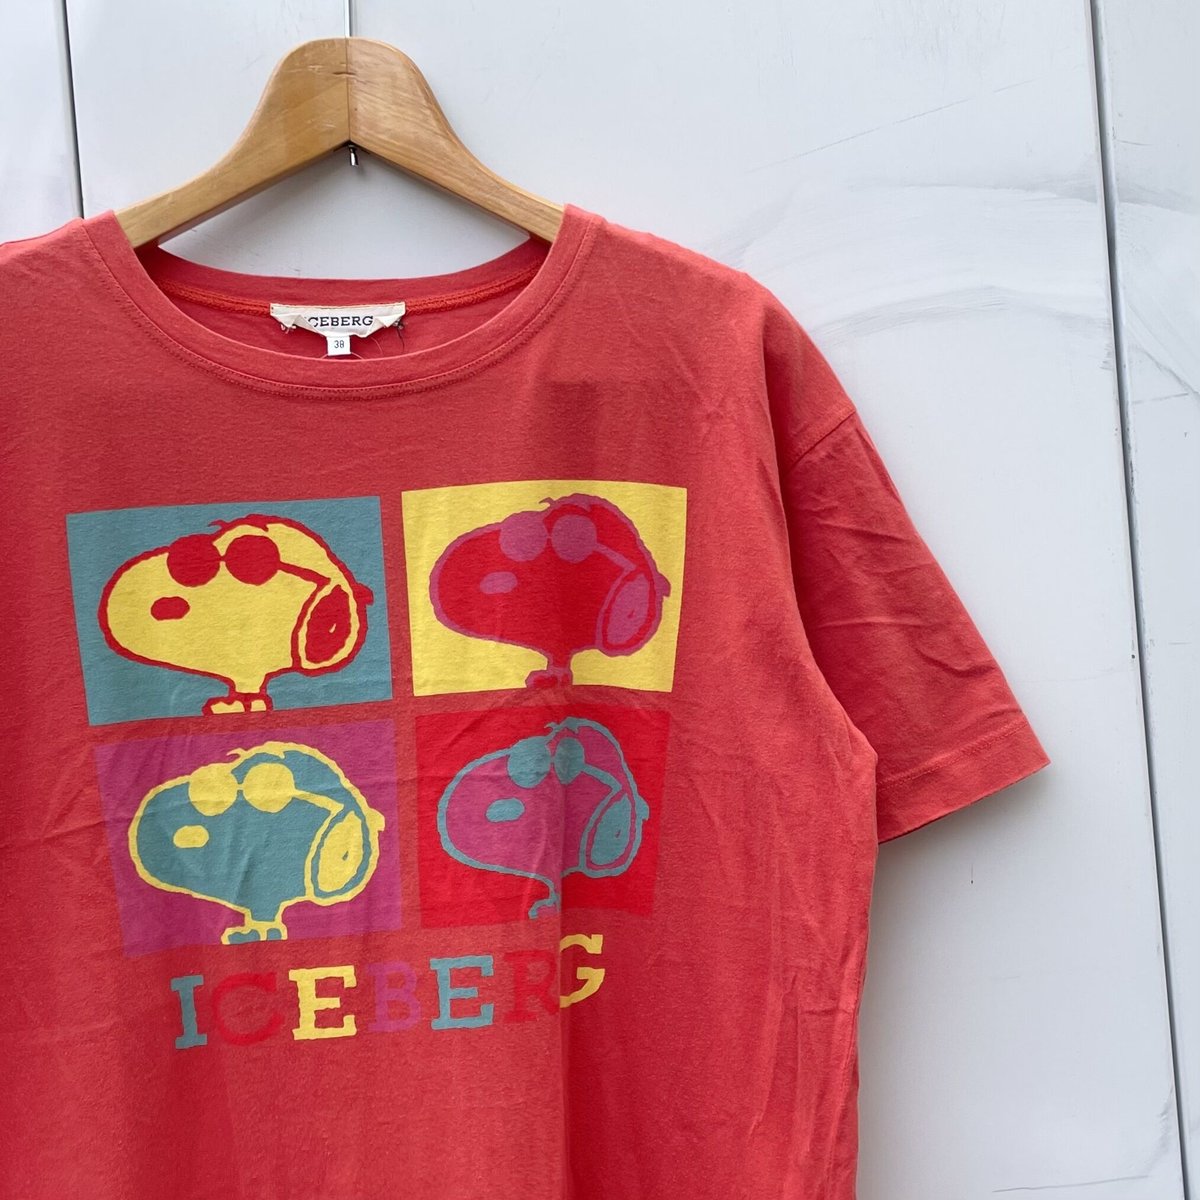 ICEBERG/アイスバーグ スヌーピー柄Tシャツ 90年代 Made in ITALY (USED)